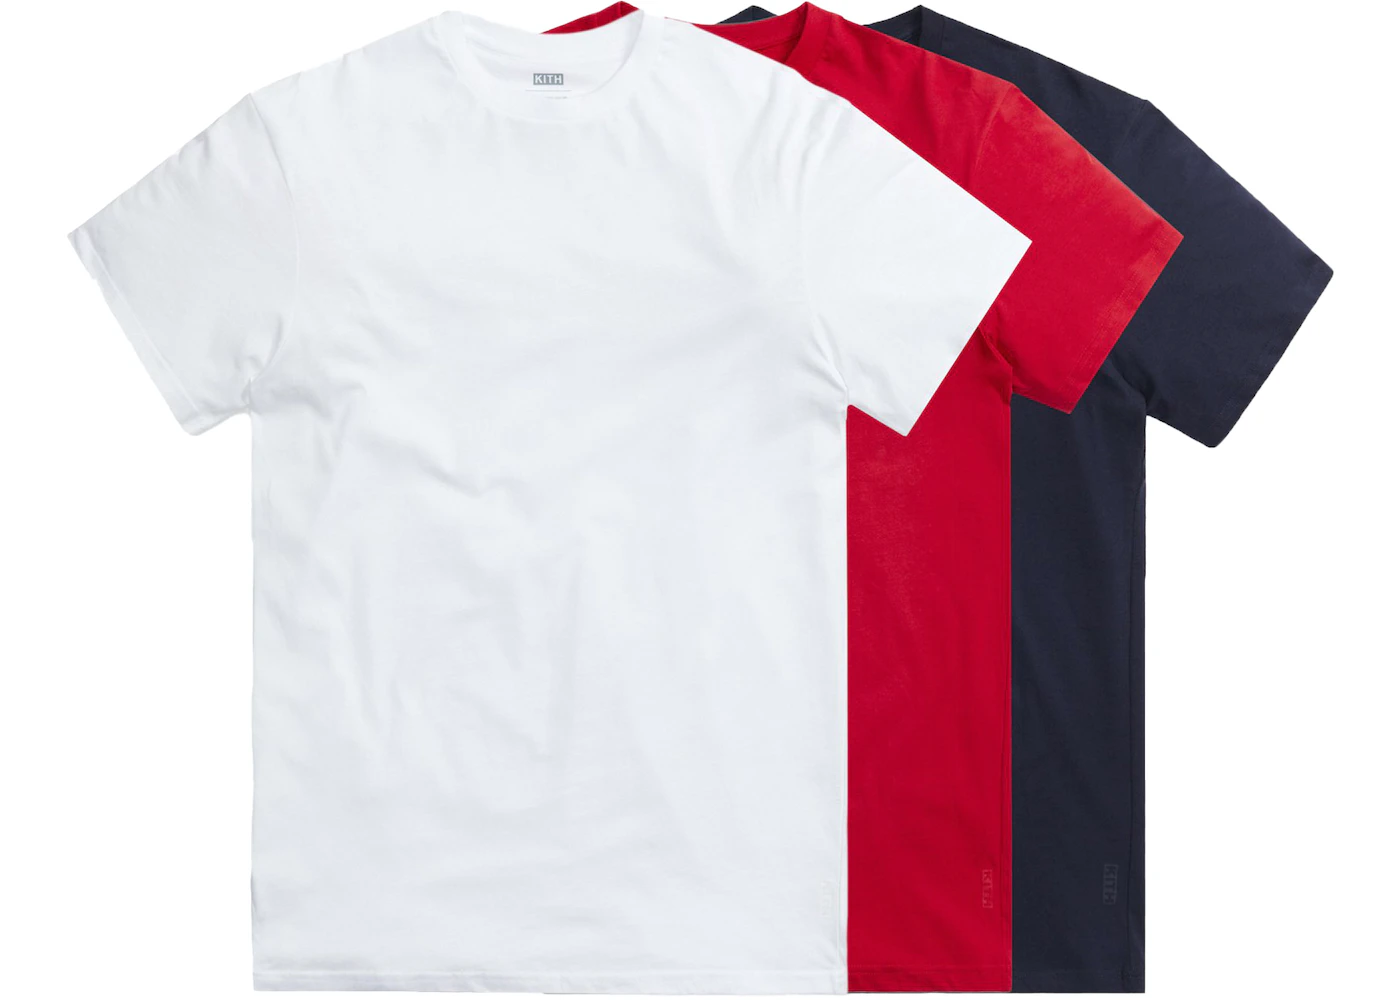 Kith for Team USA Undershirt (3-Pack) White/Crimson Red/Obsidian Navy ...